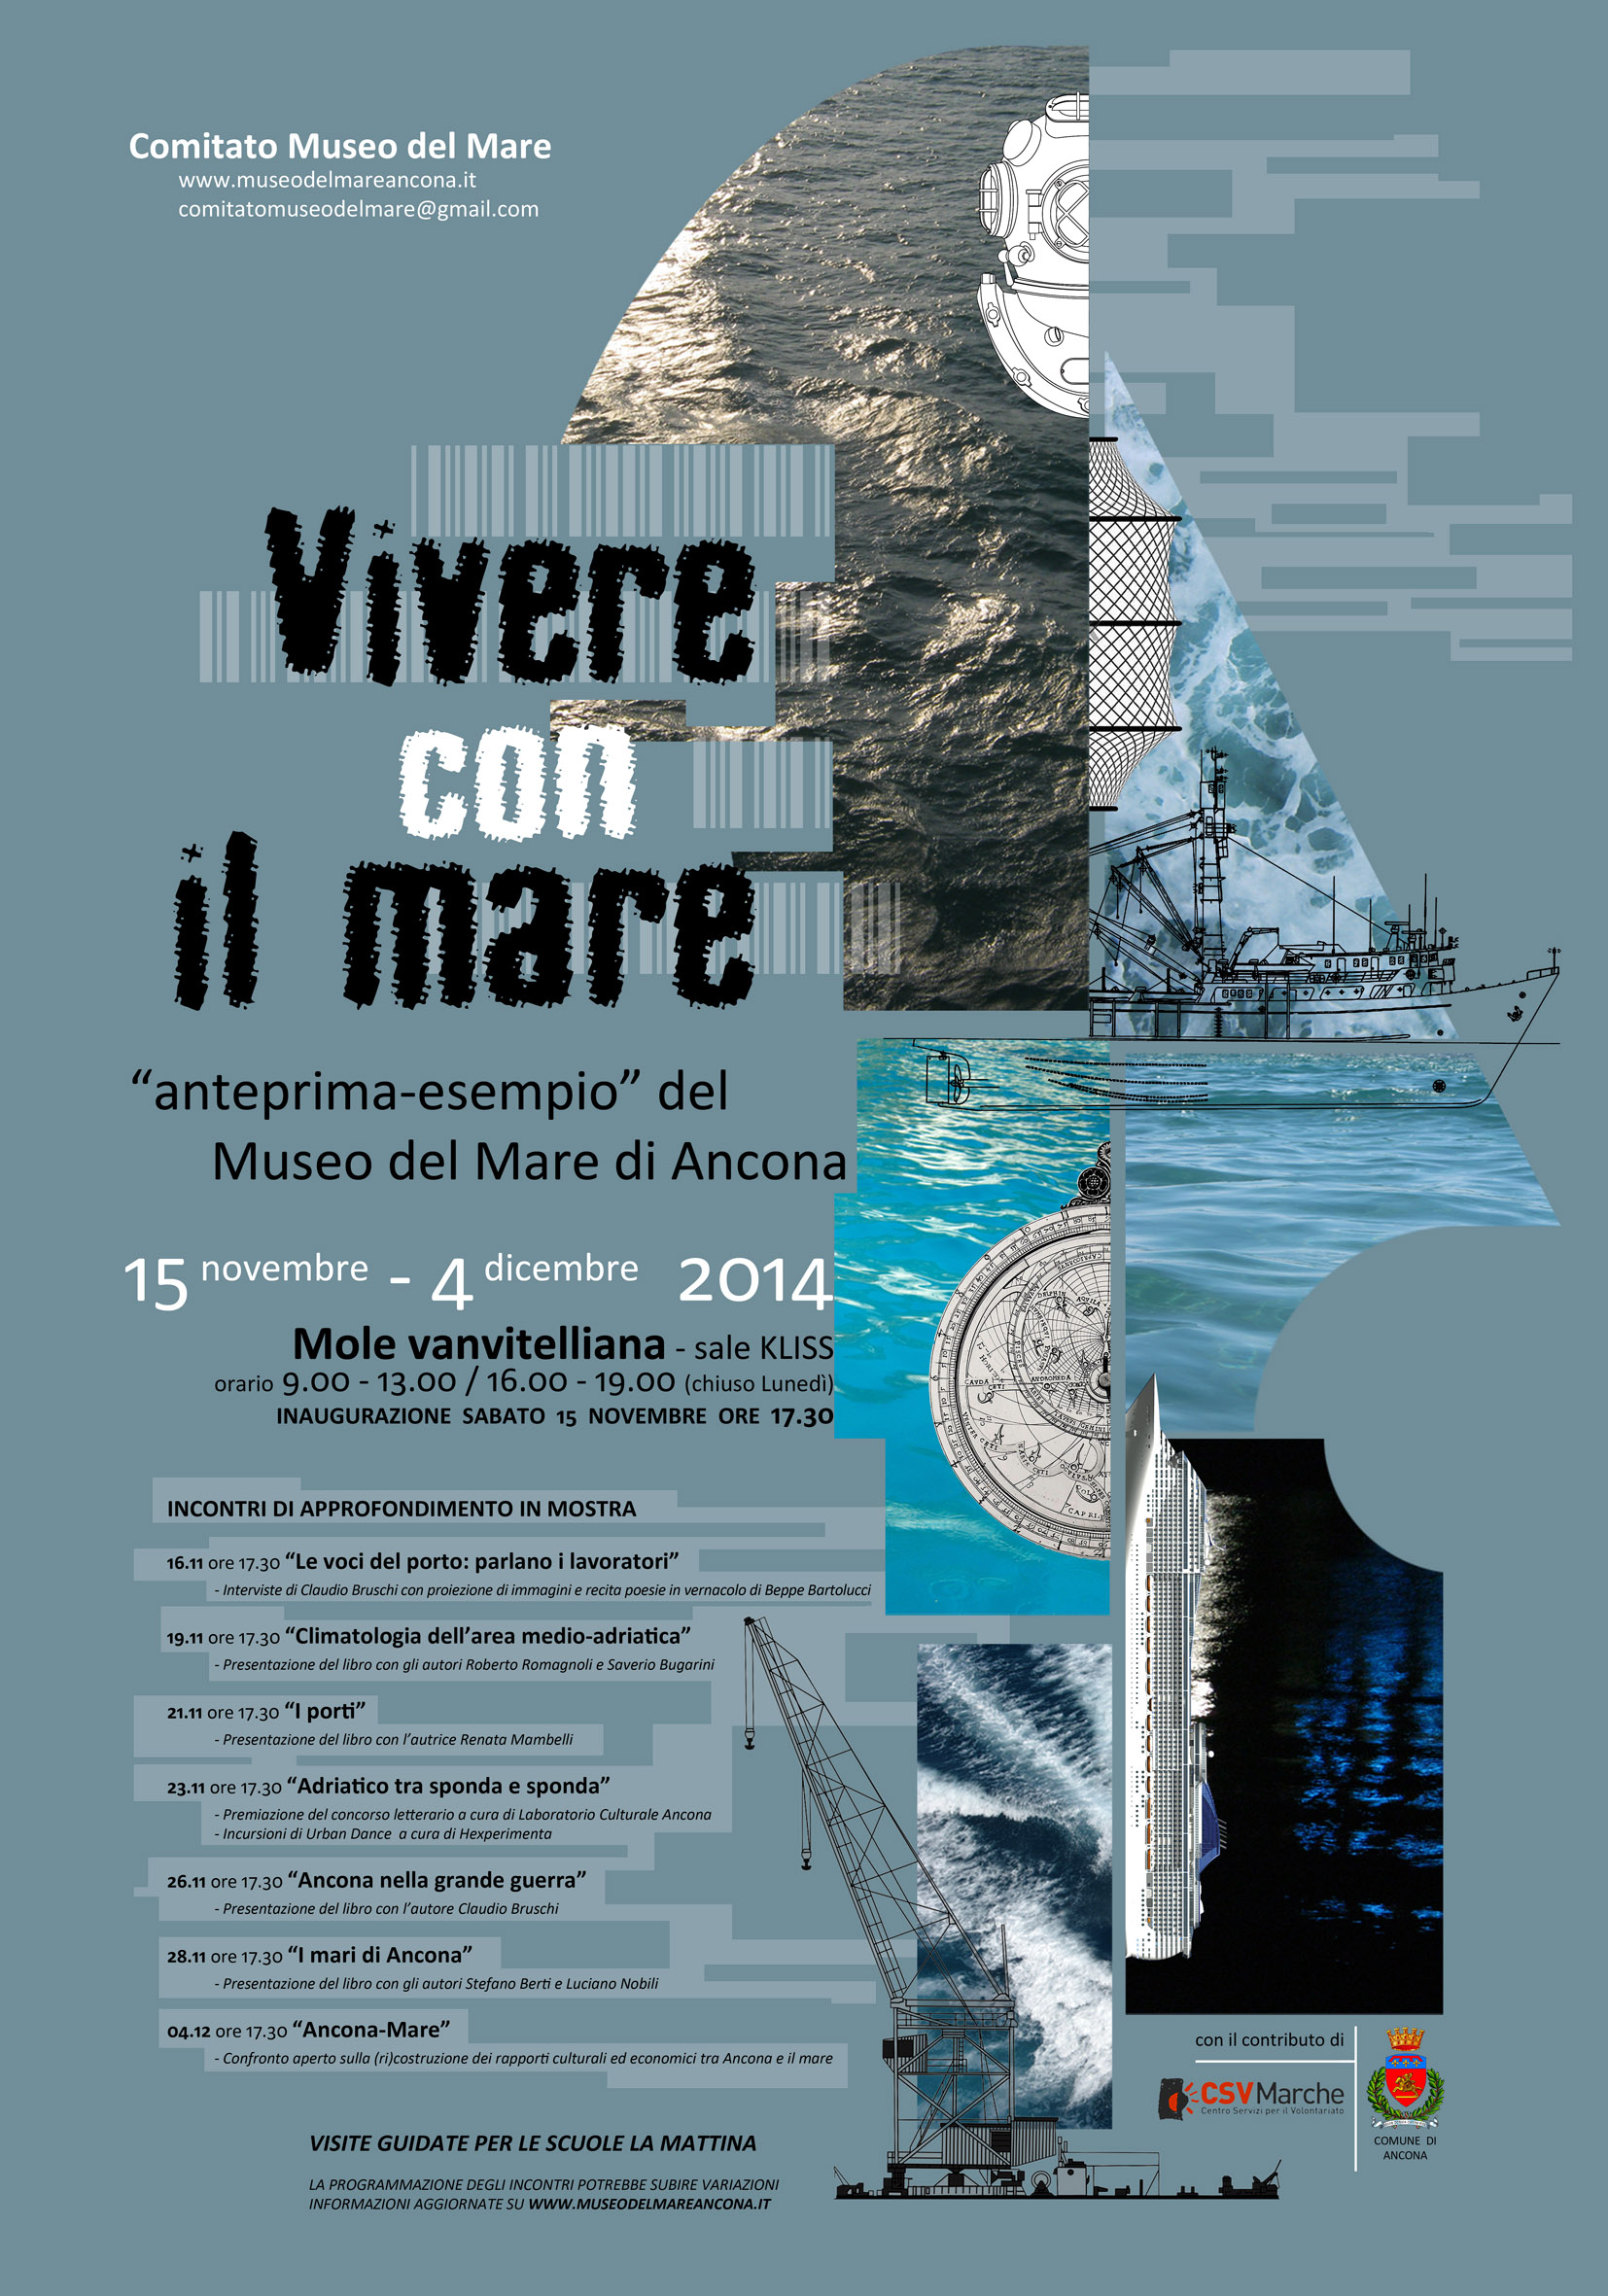 Mostra ed eventi per un Museo del Mare ad Ancona